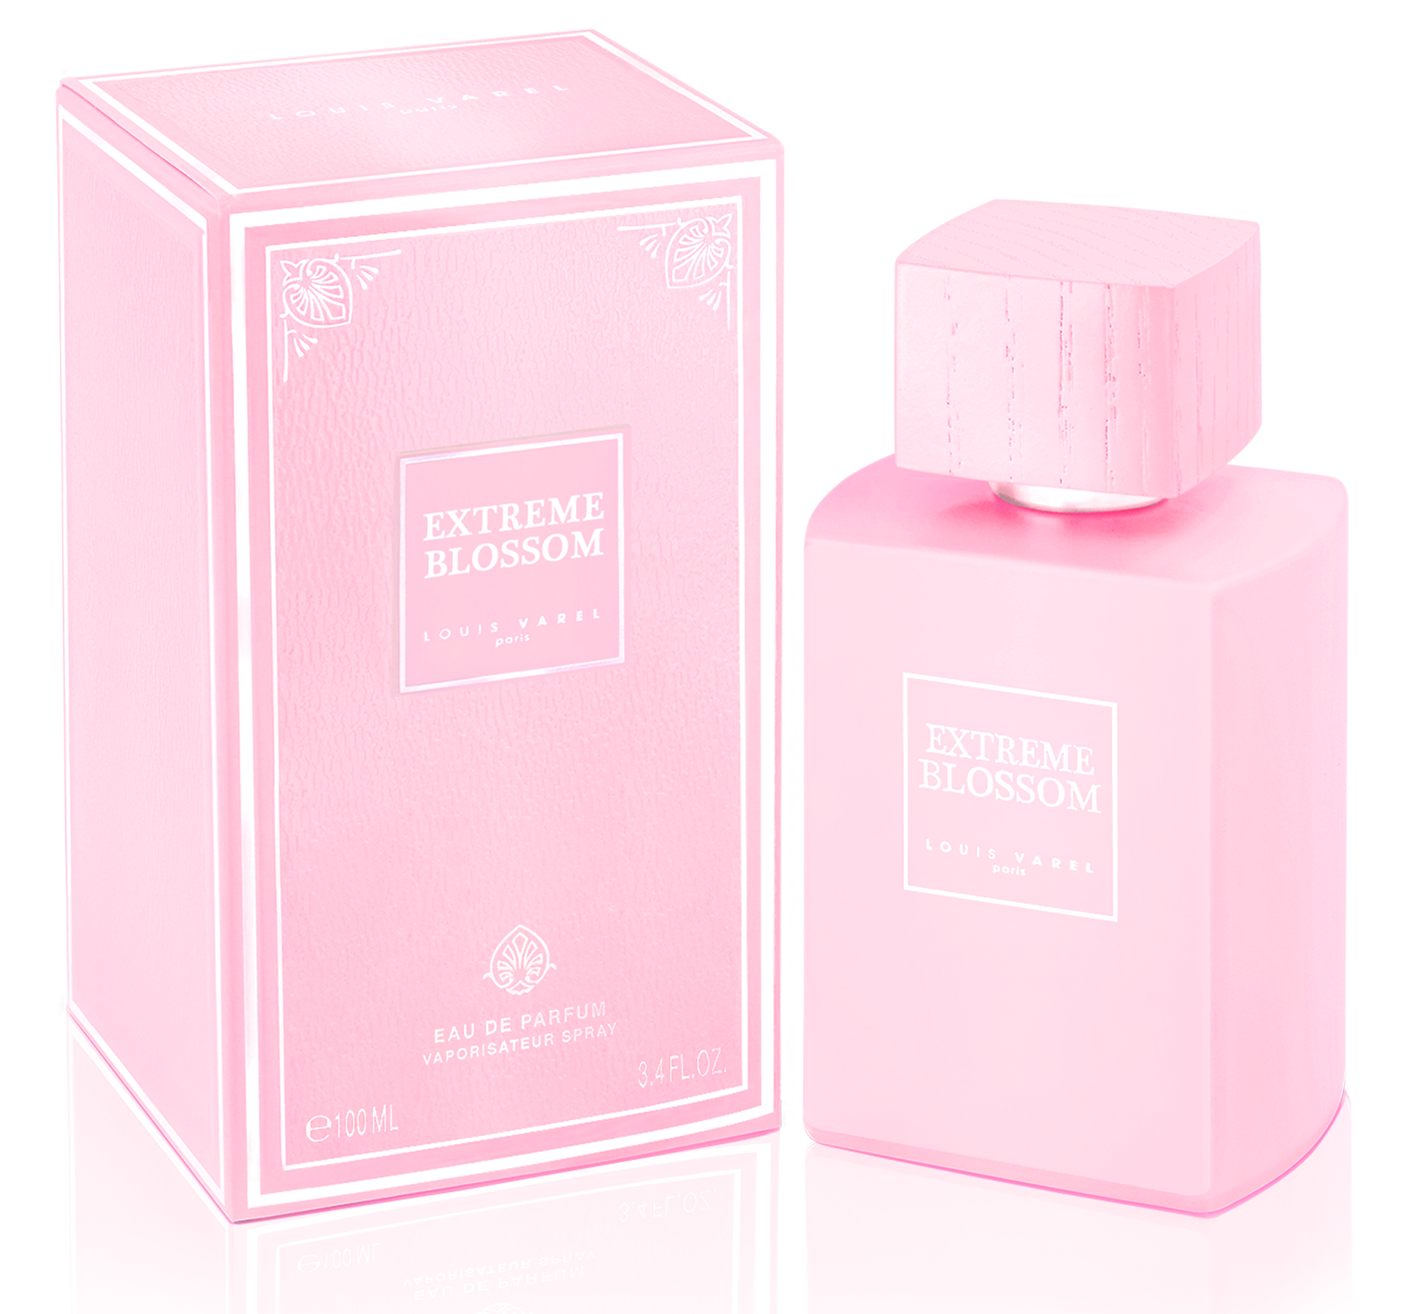 Parfum Extreme Blossom, apa de parfum 100 ml, femei